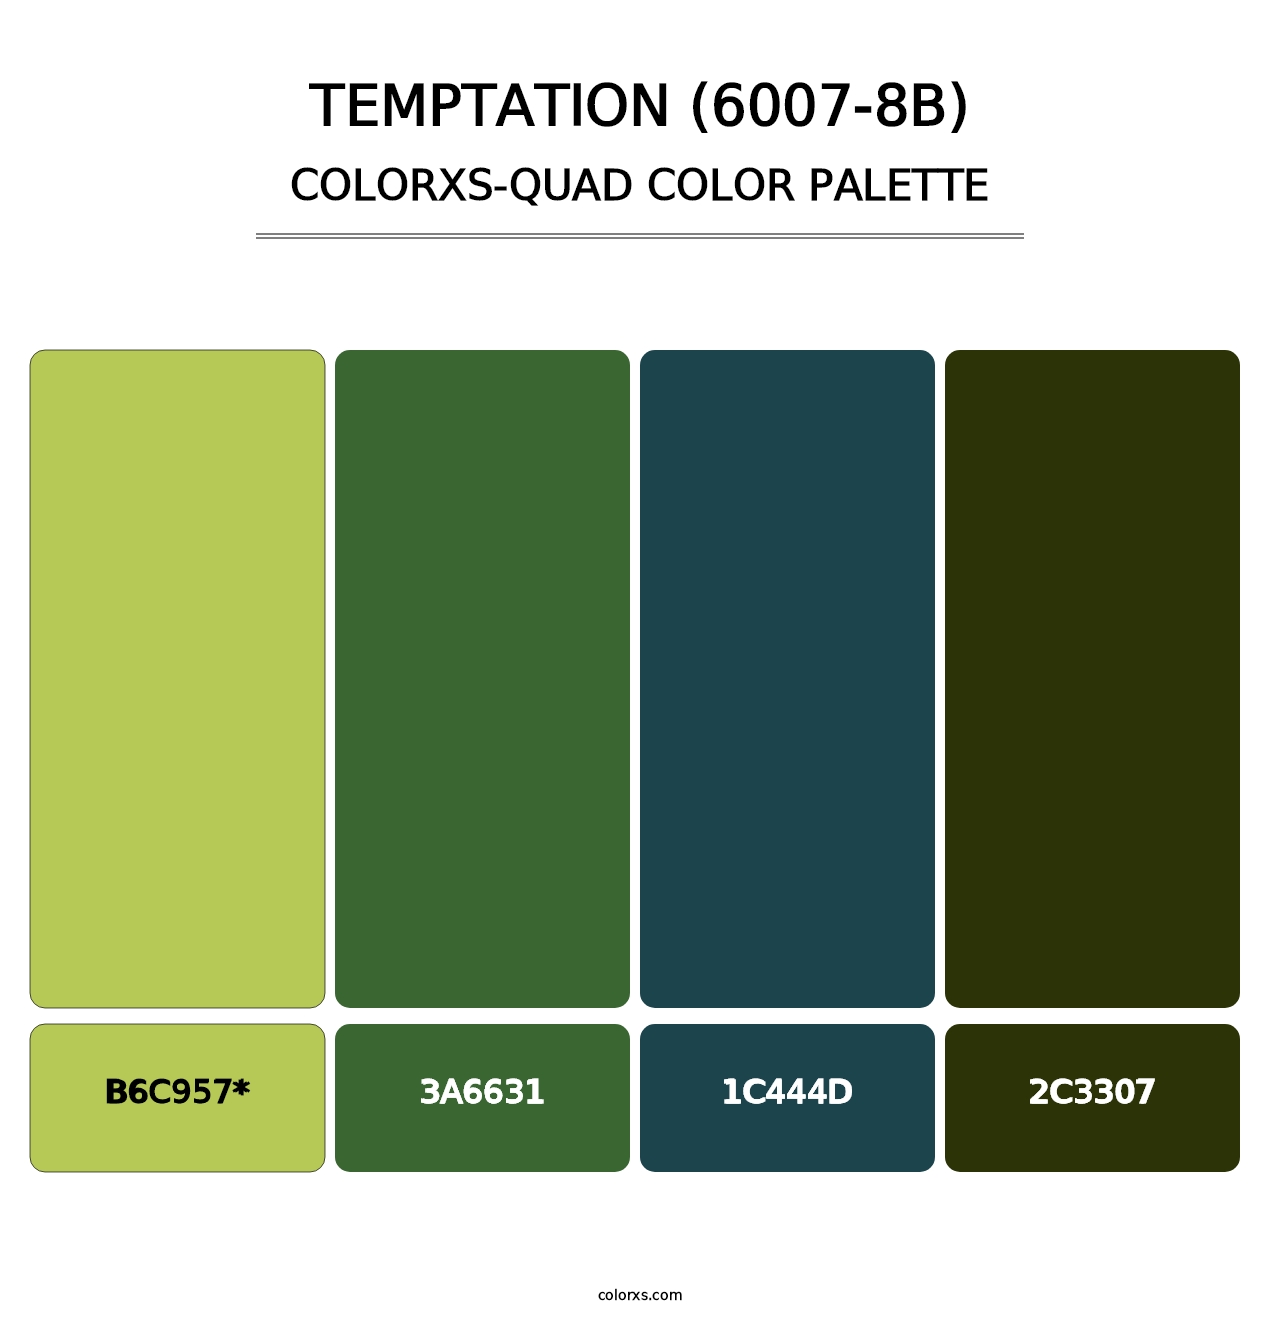 Temptation (6007-8B) - Colorxs Quad Palette